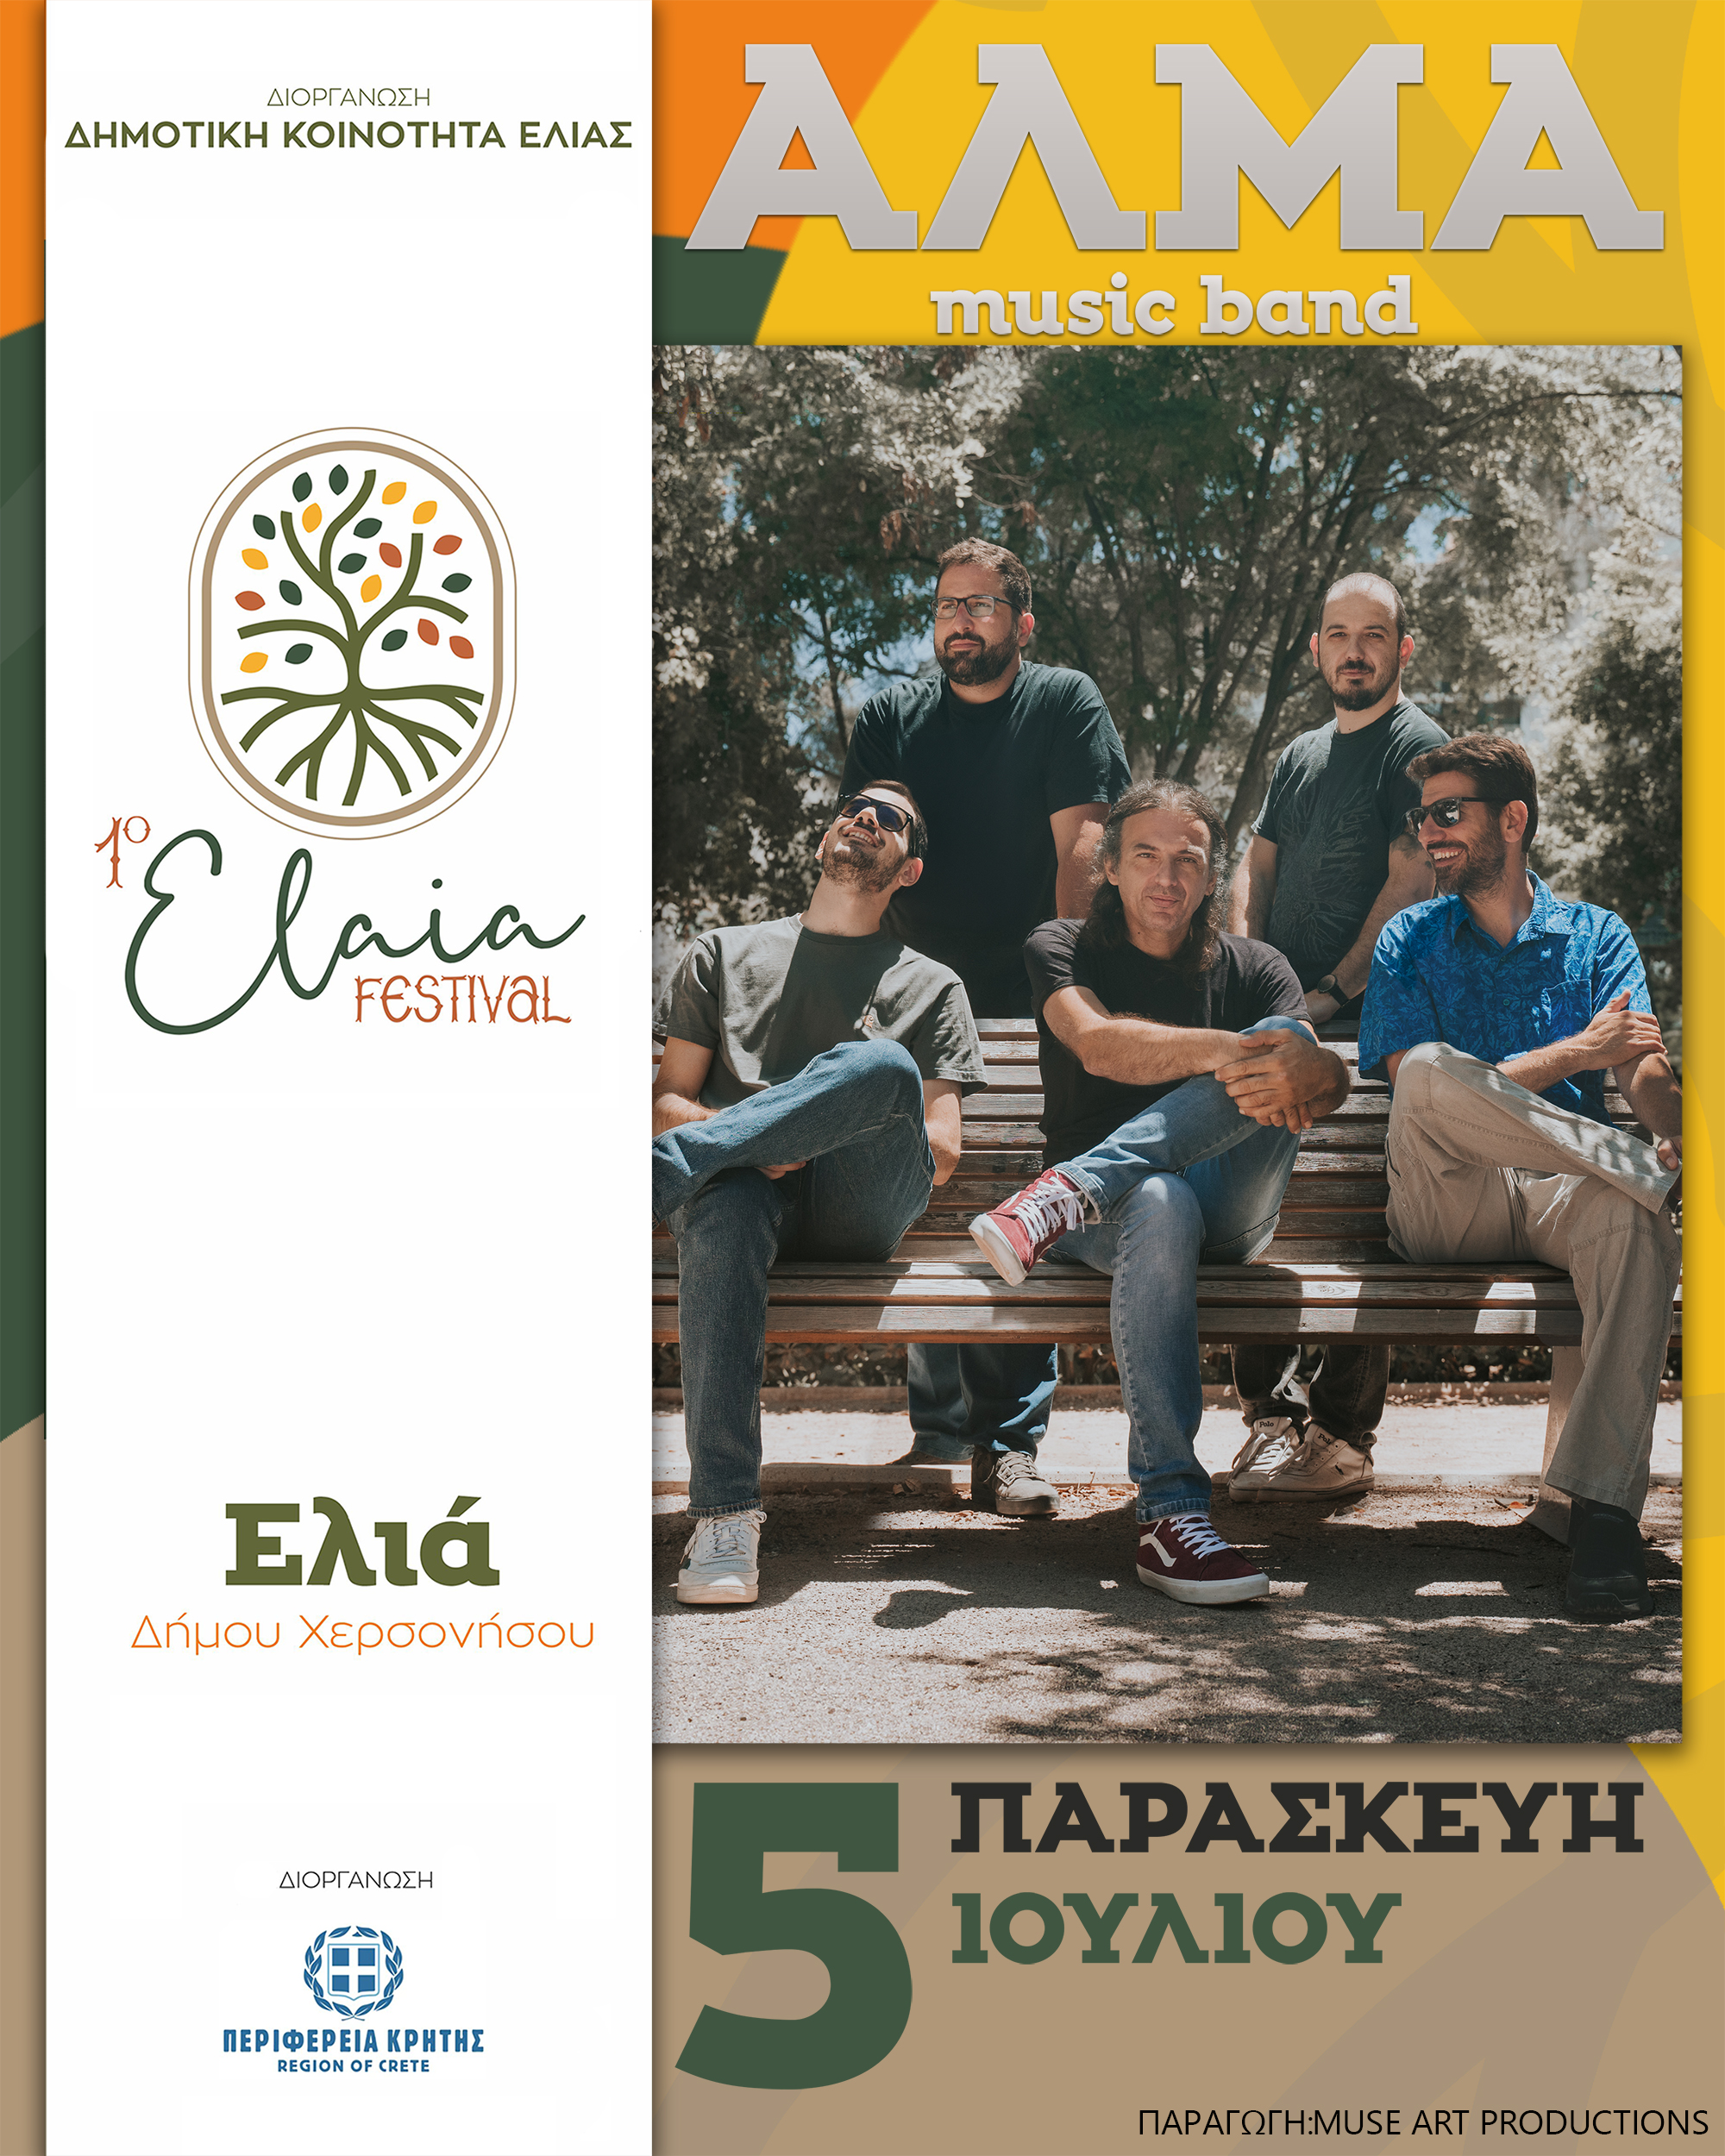 Την Παρασκευή 5 Ιουλίου ο Δημήτρης Χουρδάκης και οι Alma music band ανοίγουν την αυλαία του 1ου Φεστιβάλ Ελιάς , στην δημοτική κοινότητα Ελιάς Πεδιάδος του Δήμου Χερσονήσου.